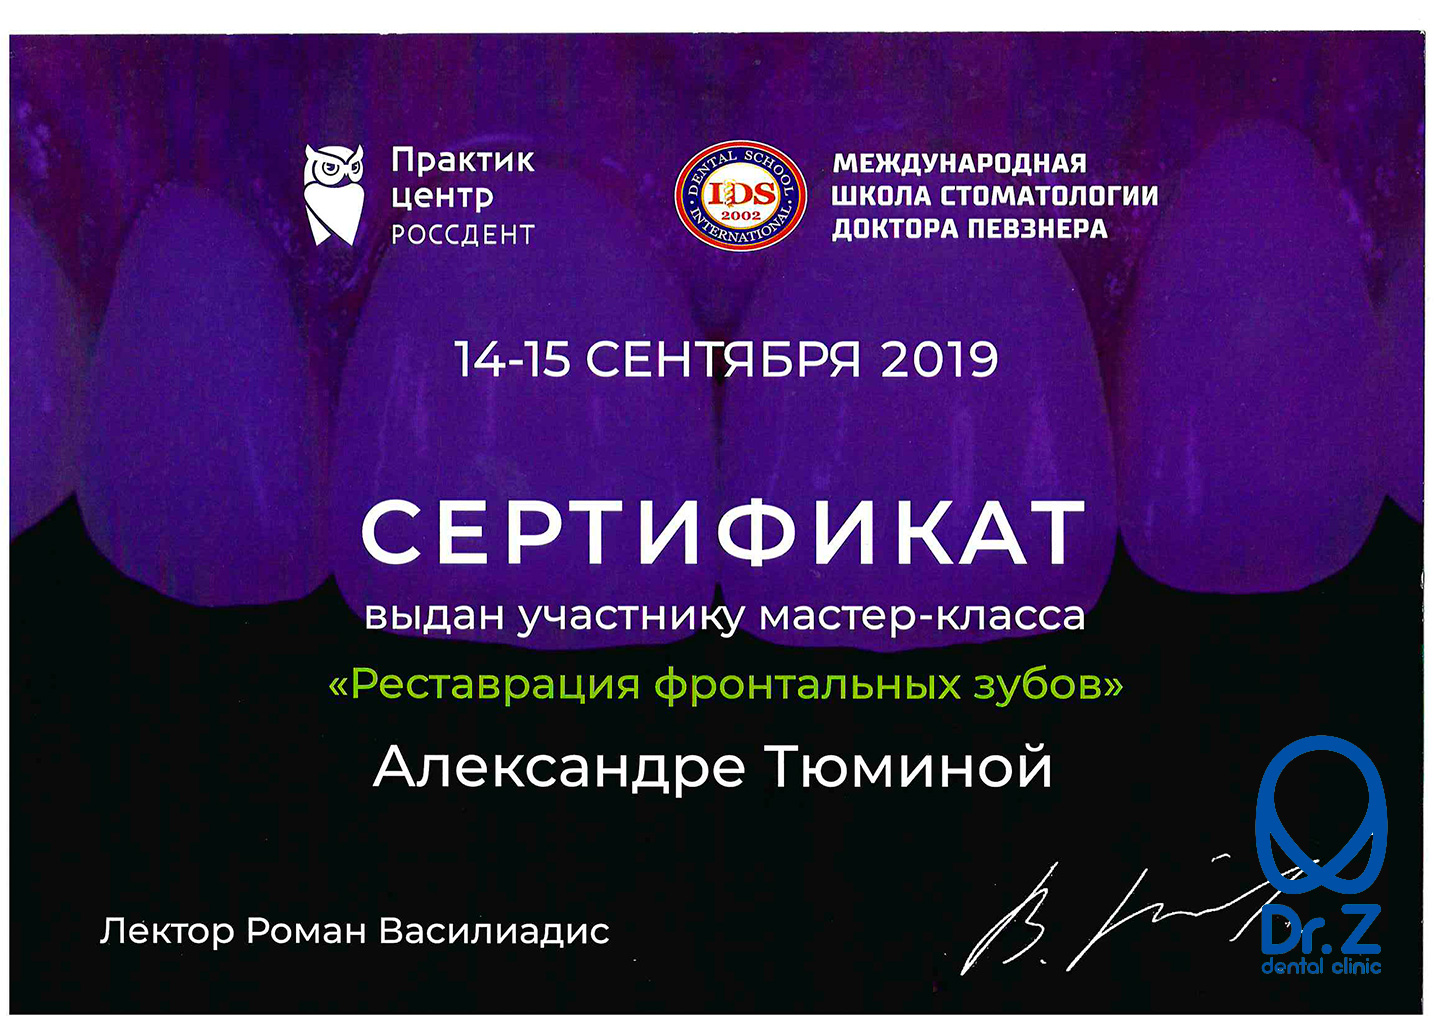 Сертификат выдан Тюминой Александре Олеговне за прохождение мастер-класса по теме 